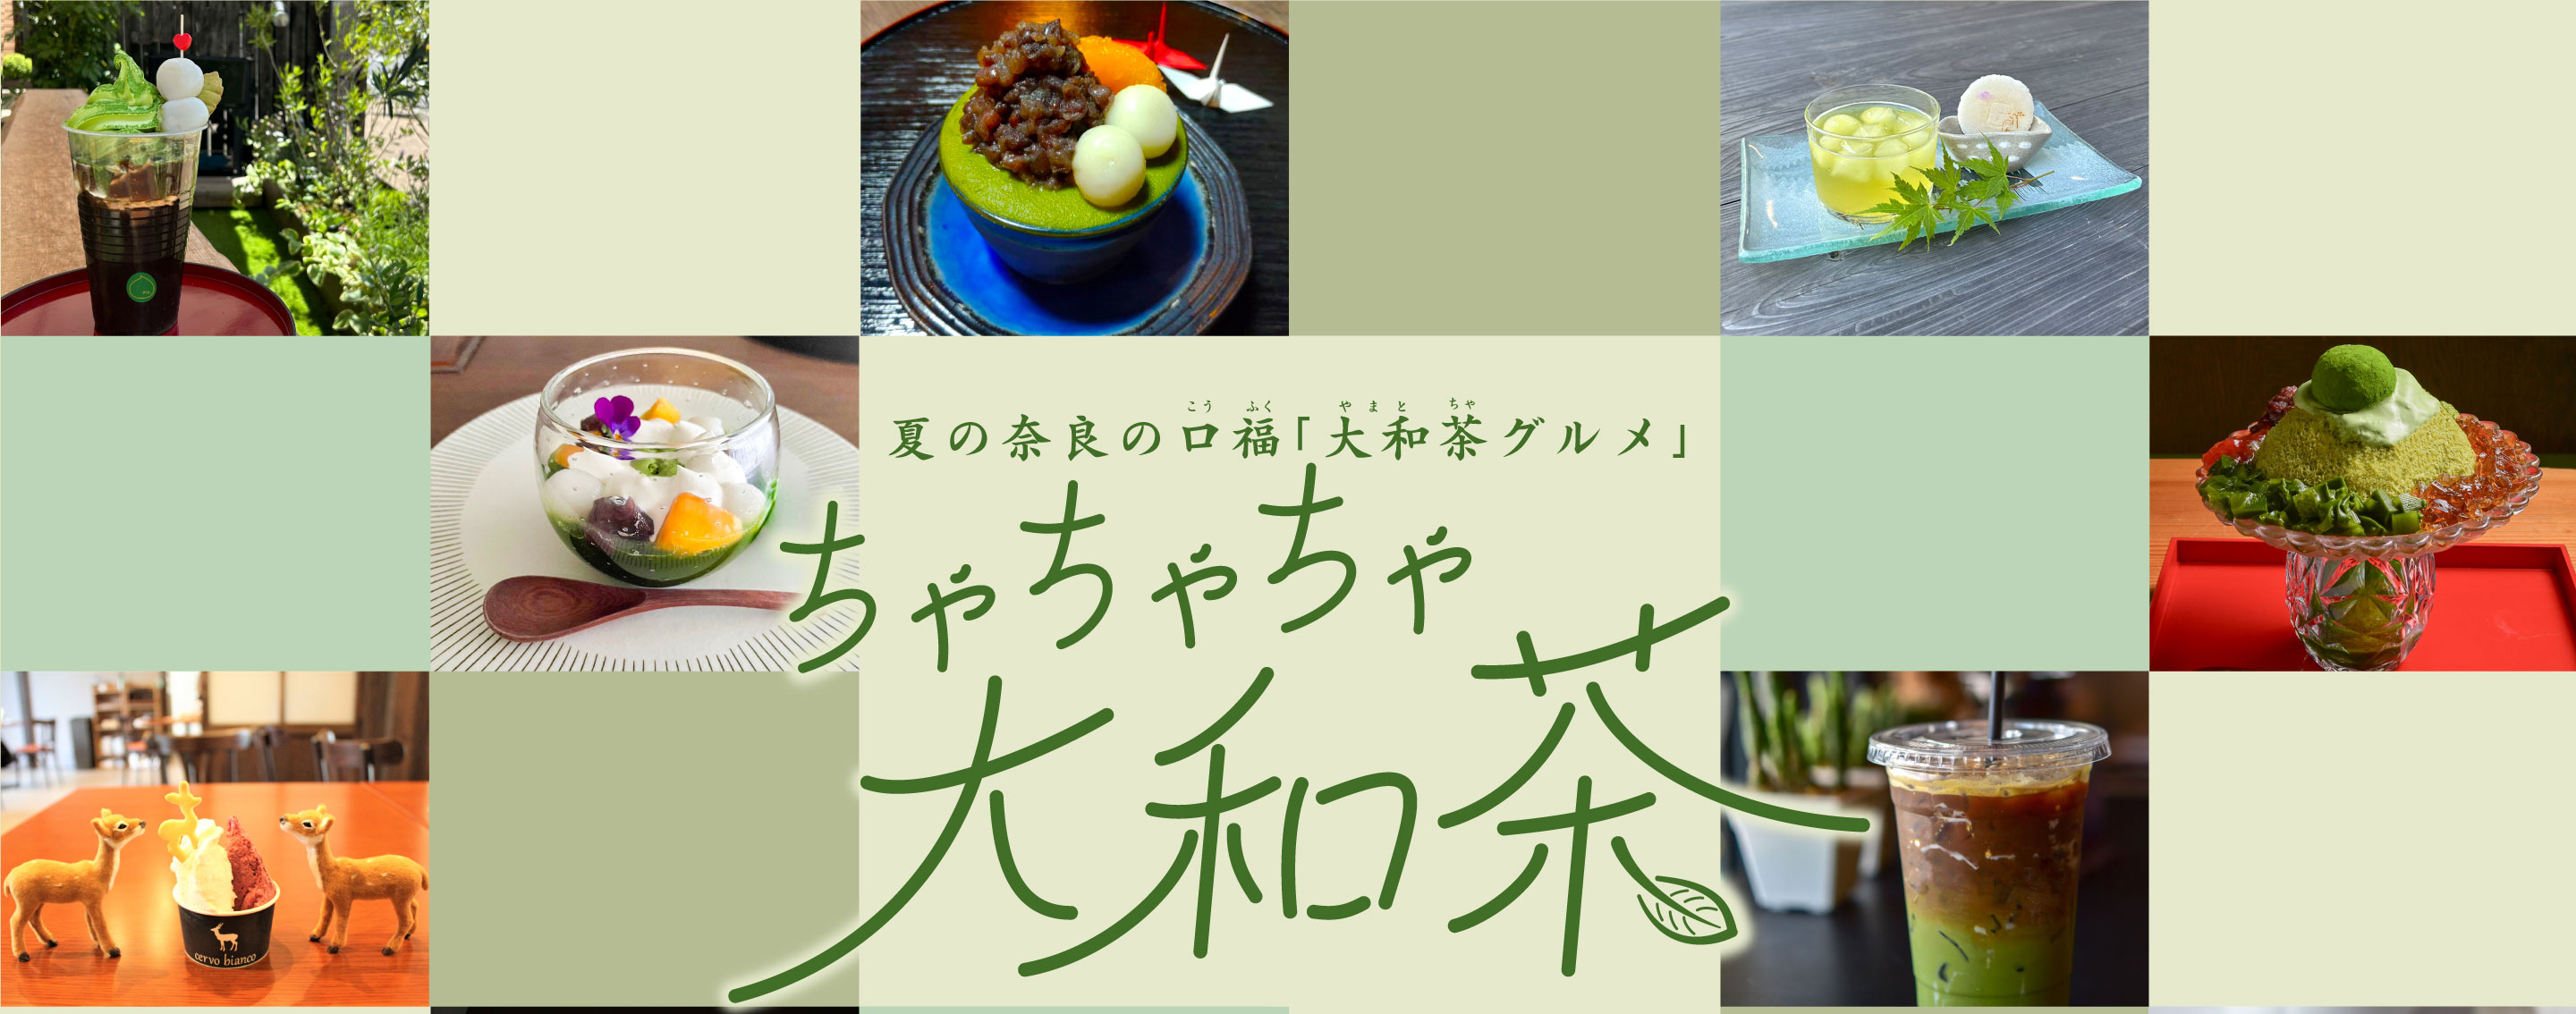 夏の奈良の口福「大和茶グルメ」ちゃちゃちゃ大和茶